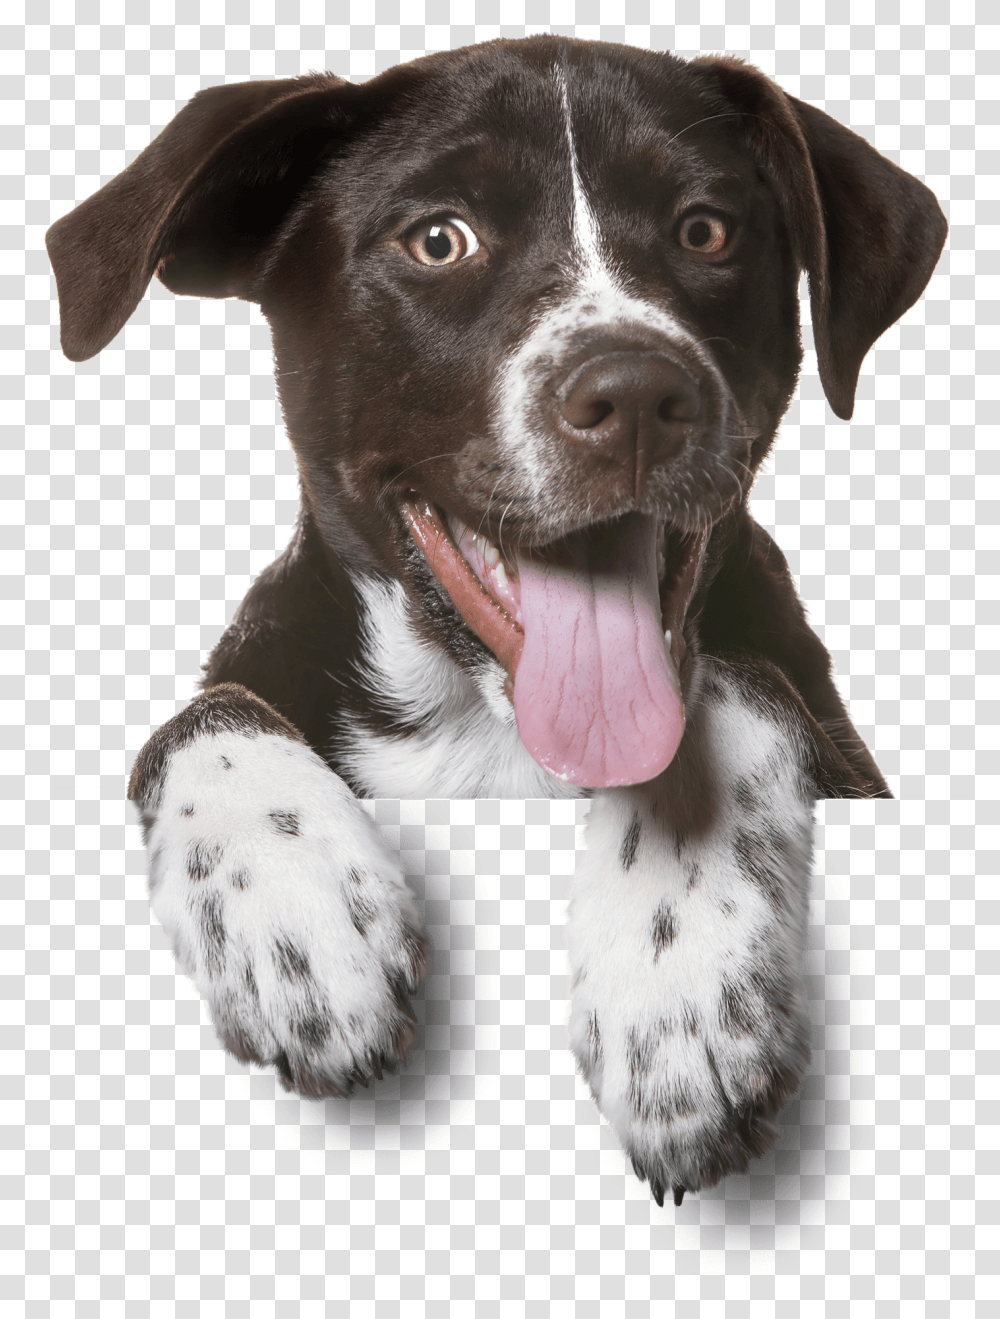 Pet Hp Dog Bg Min Um Ato De Amor Animais, Labrador Retriever, Canine, Animal, Mammal Transparent Png